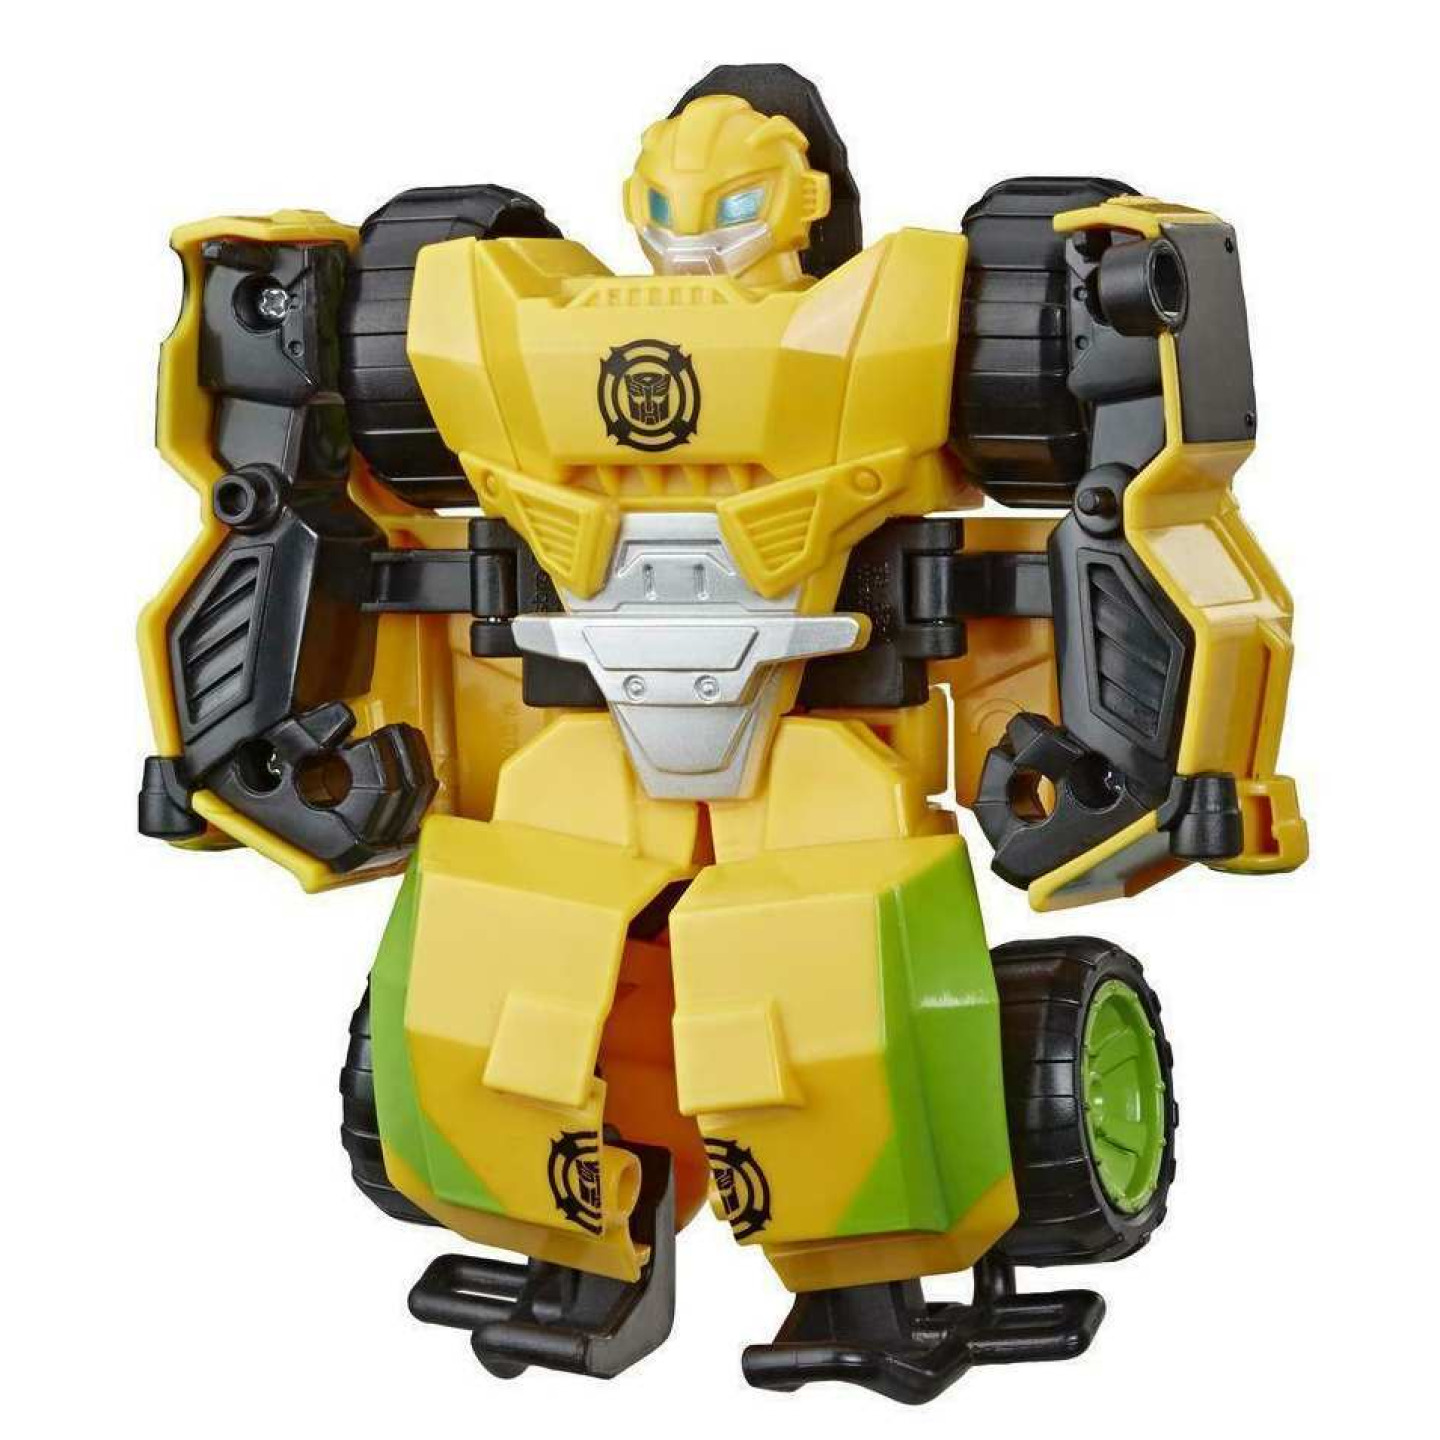 Transformers Rescue Bots Academy BUMBLEBEE, Hasbro E5691